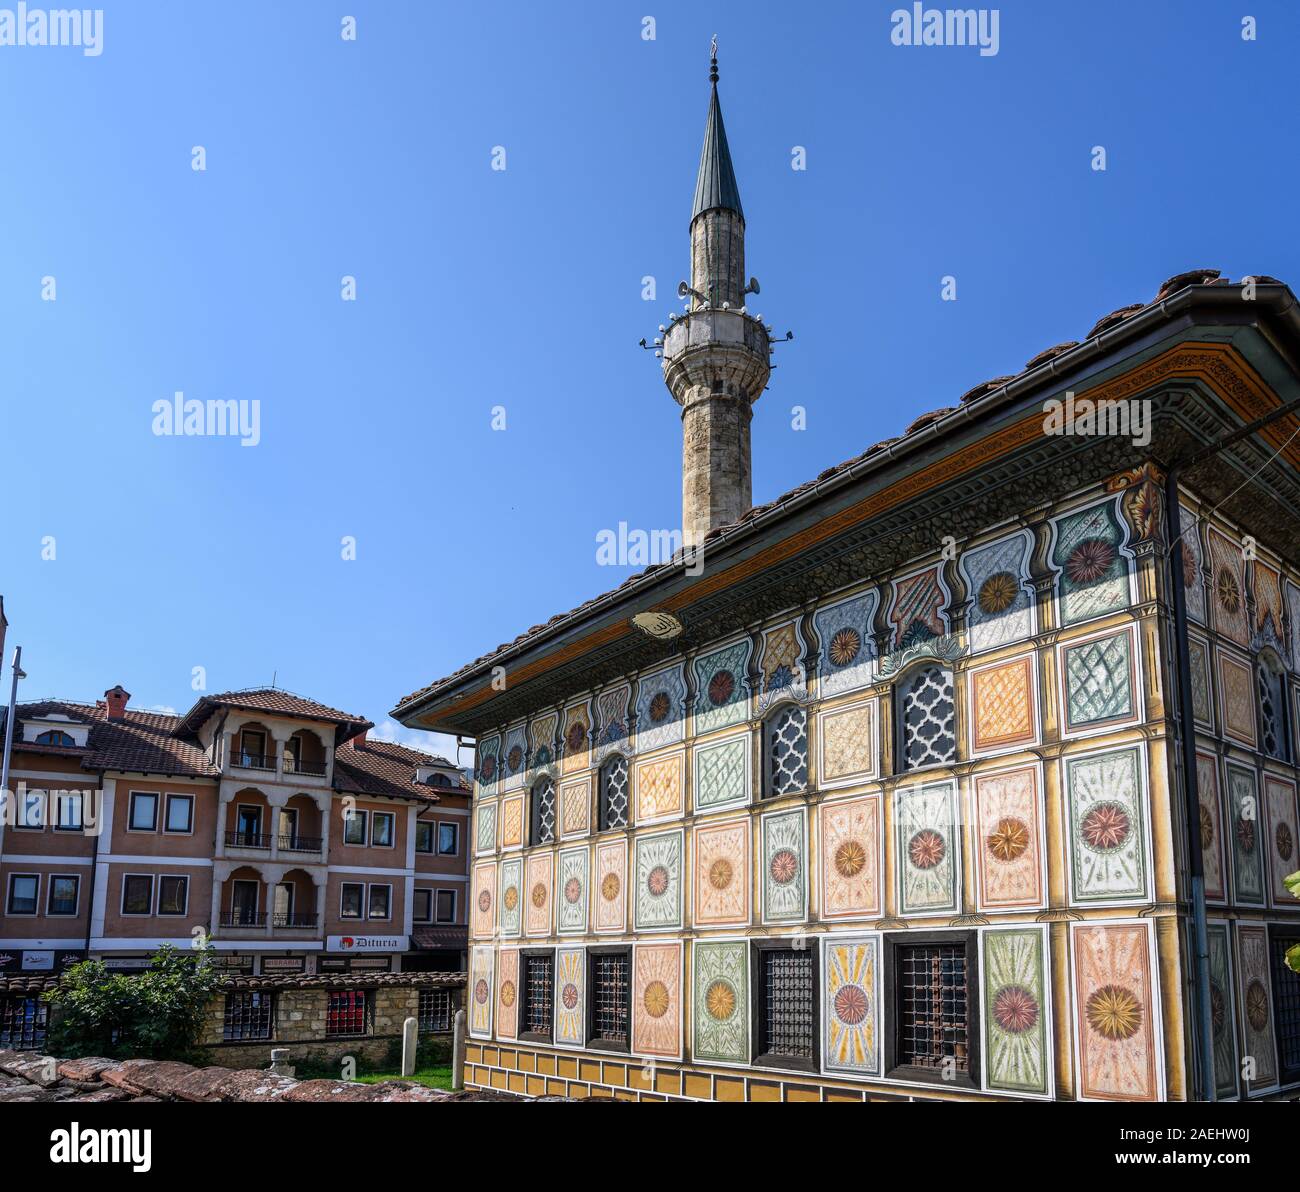 La Moschea Šarena o decorato/moschea dipinta originariamente costruito nel 1438 e ri-costruito nel 1833, nel centro di Tetovo nel nord della Macedonia. Foto Stock